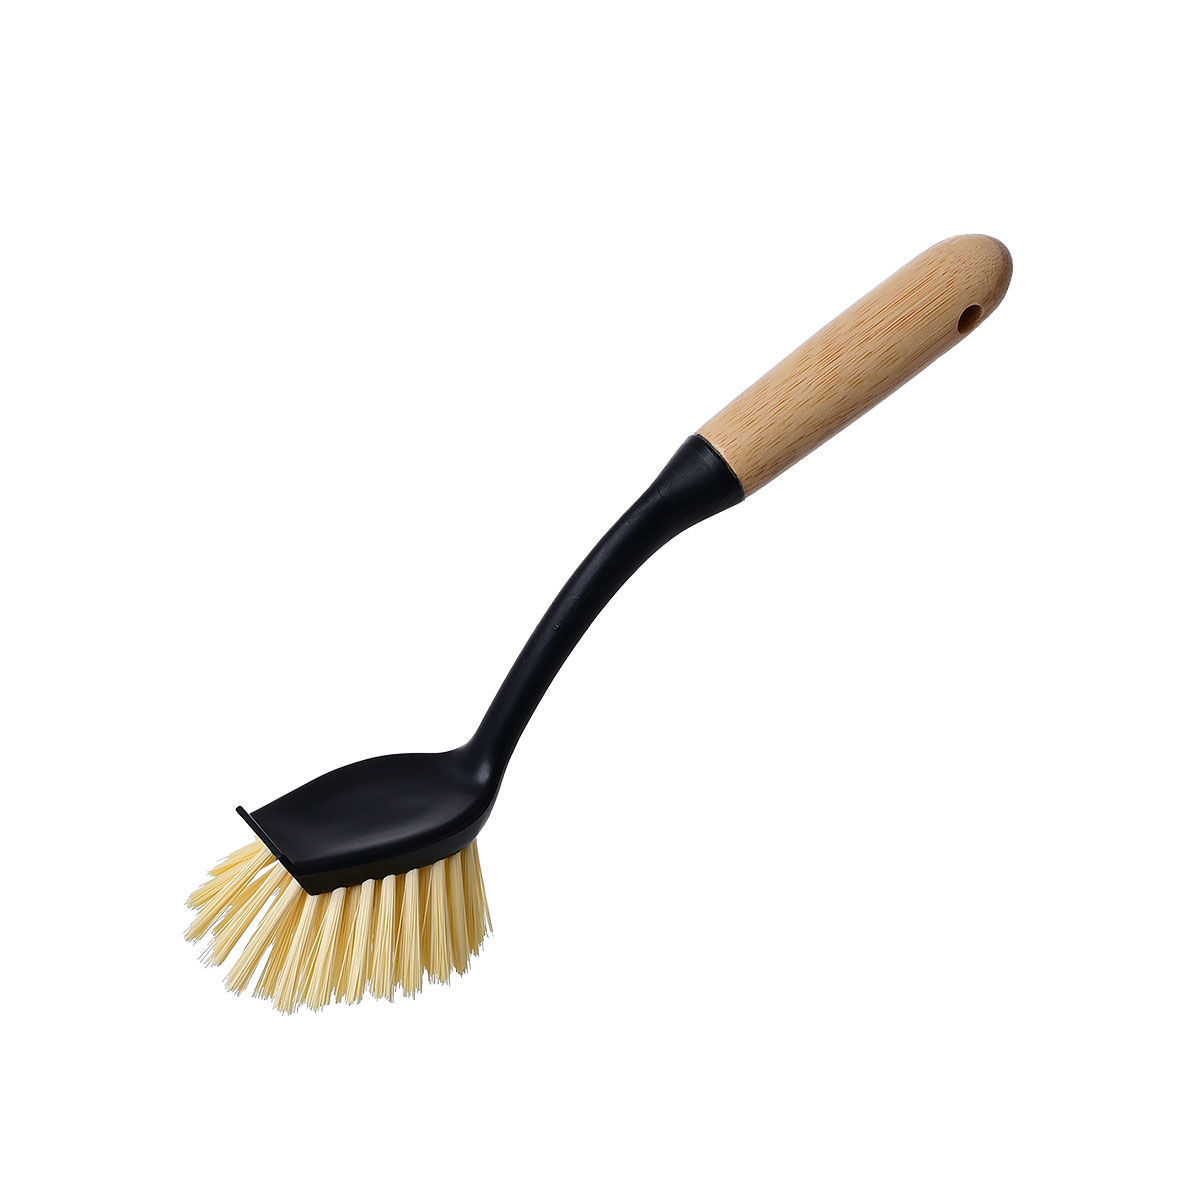 Βούρτσα Καθαρισμού Πιάτων Πλαστική-Bamboo Essential Μαύρη Estia 7x7x28εκ. 04-14254 (Υλικό: Πλαστικό, Χρώμα: Μαύρο) – estia – 04-14254